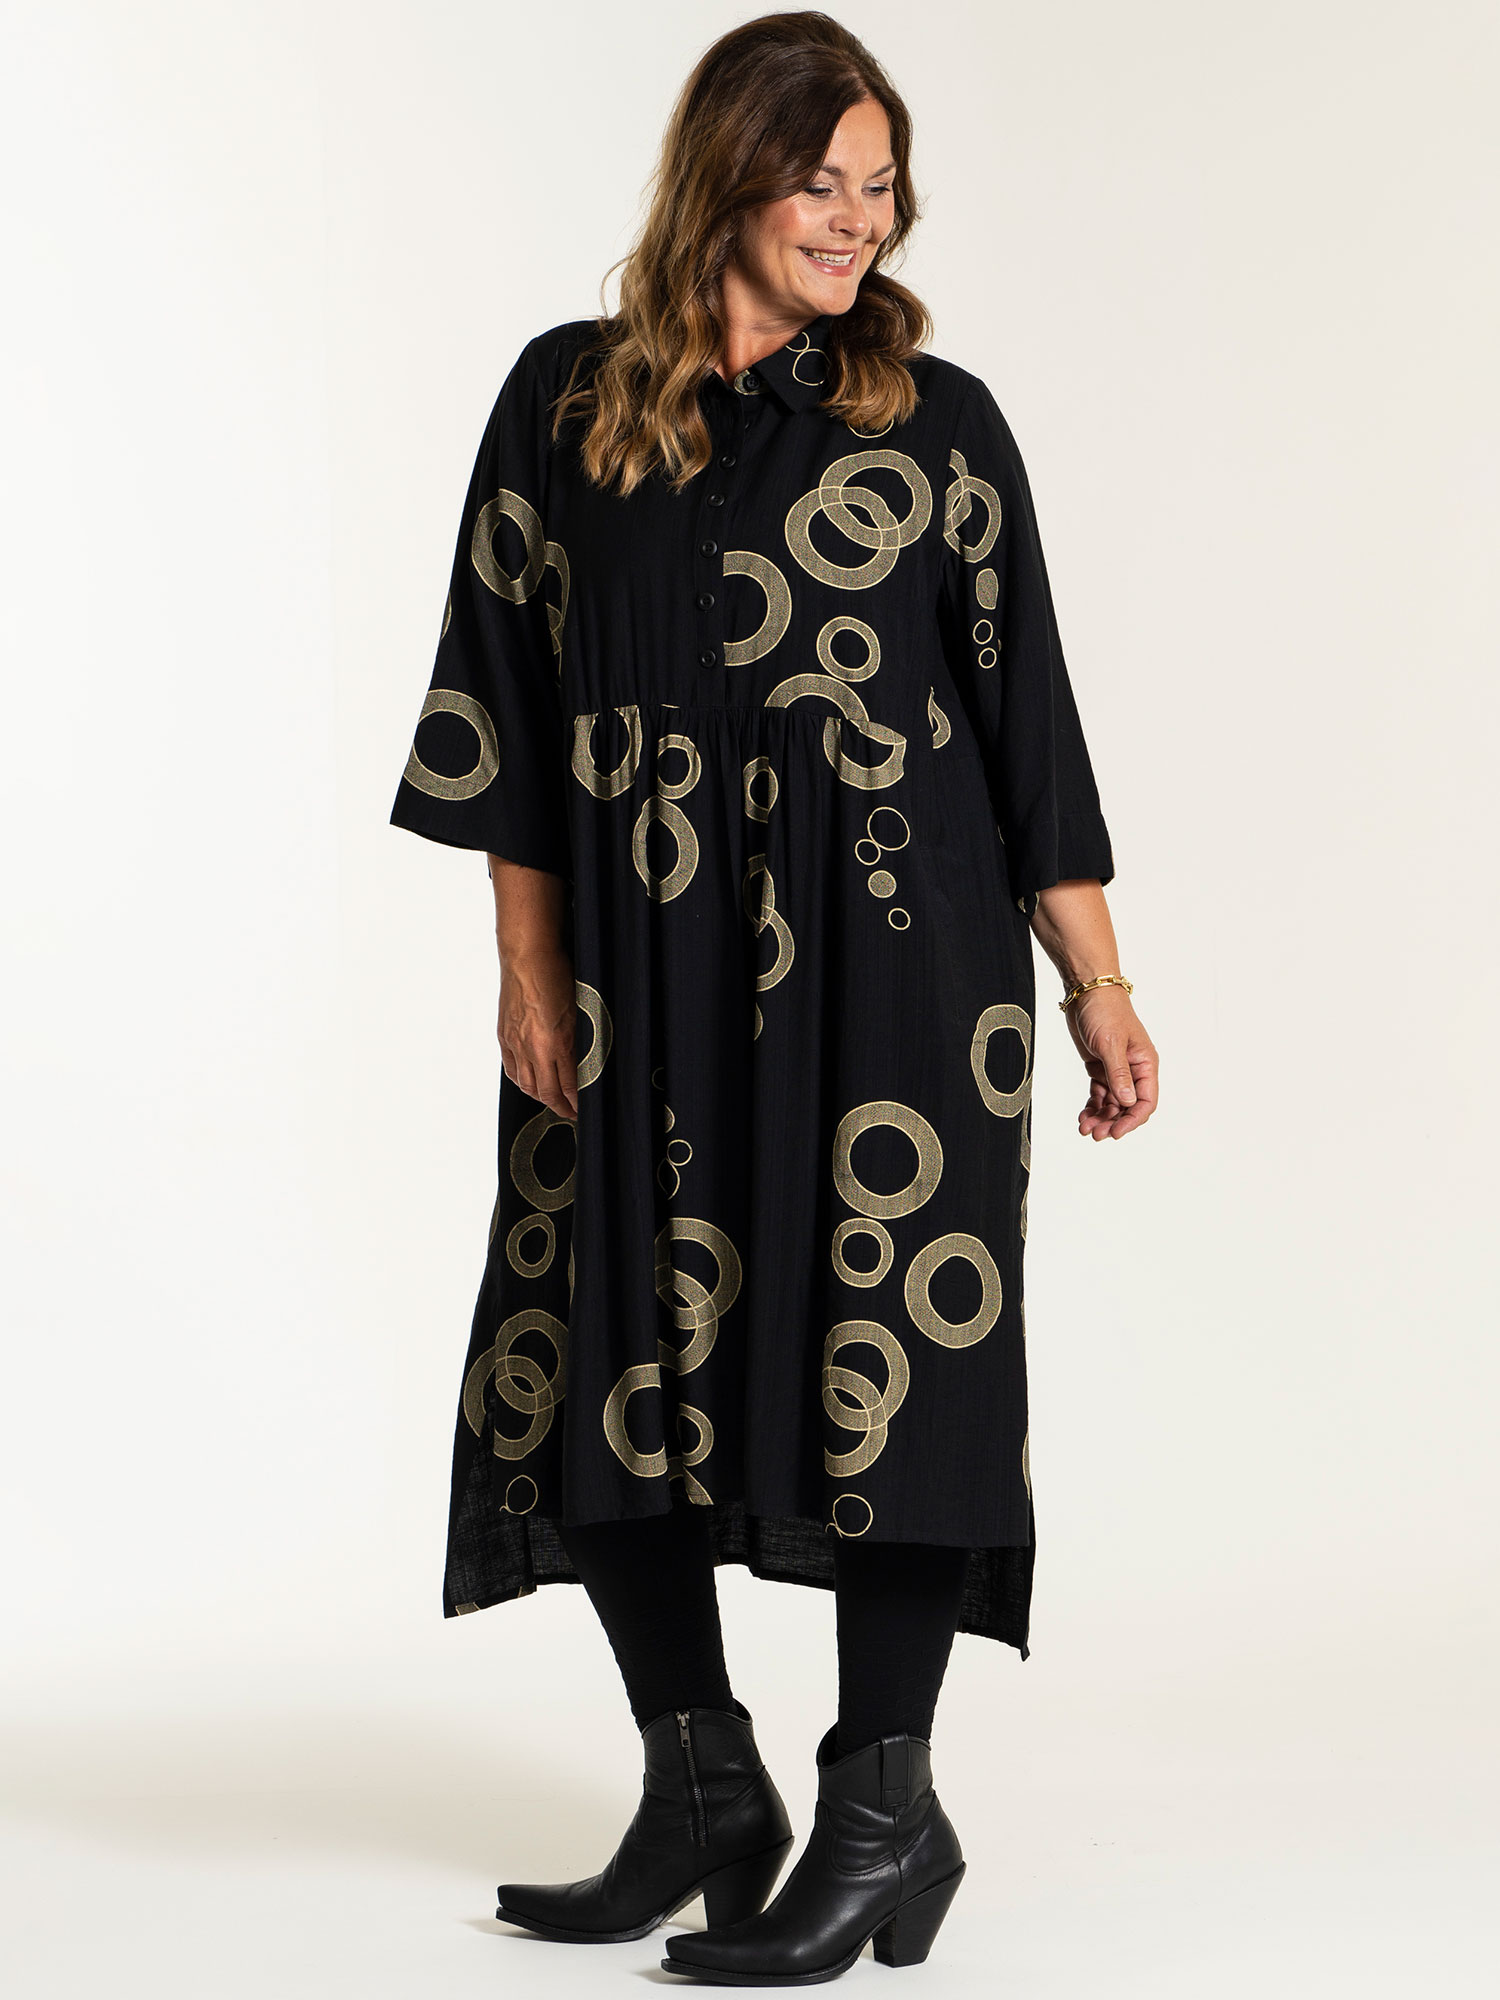 SUSANNE - Sort viskose kjole med beige mønster fra Gozzip